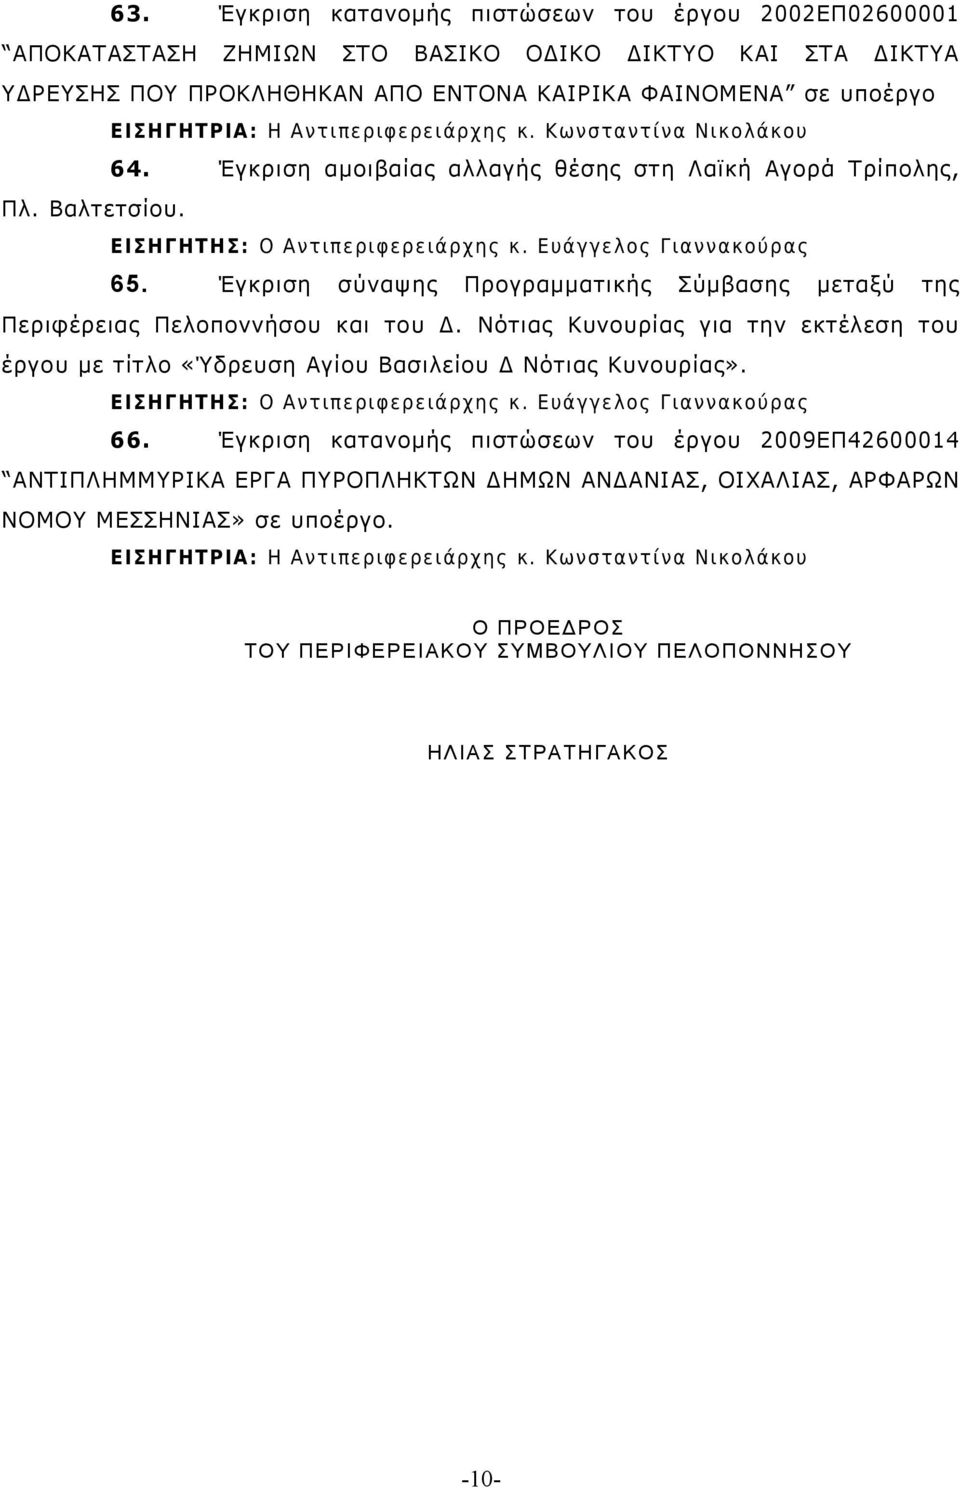 Έγκριση σύναψης Προγραμματικής Σύμβασης μεταξύ της Περιφέρειας Πελοποννήσου και του Δ.